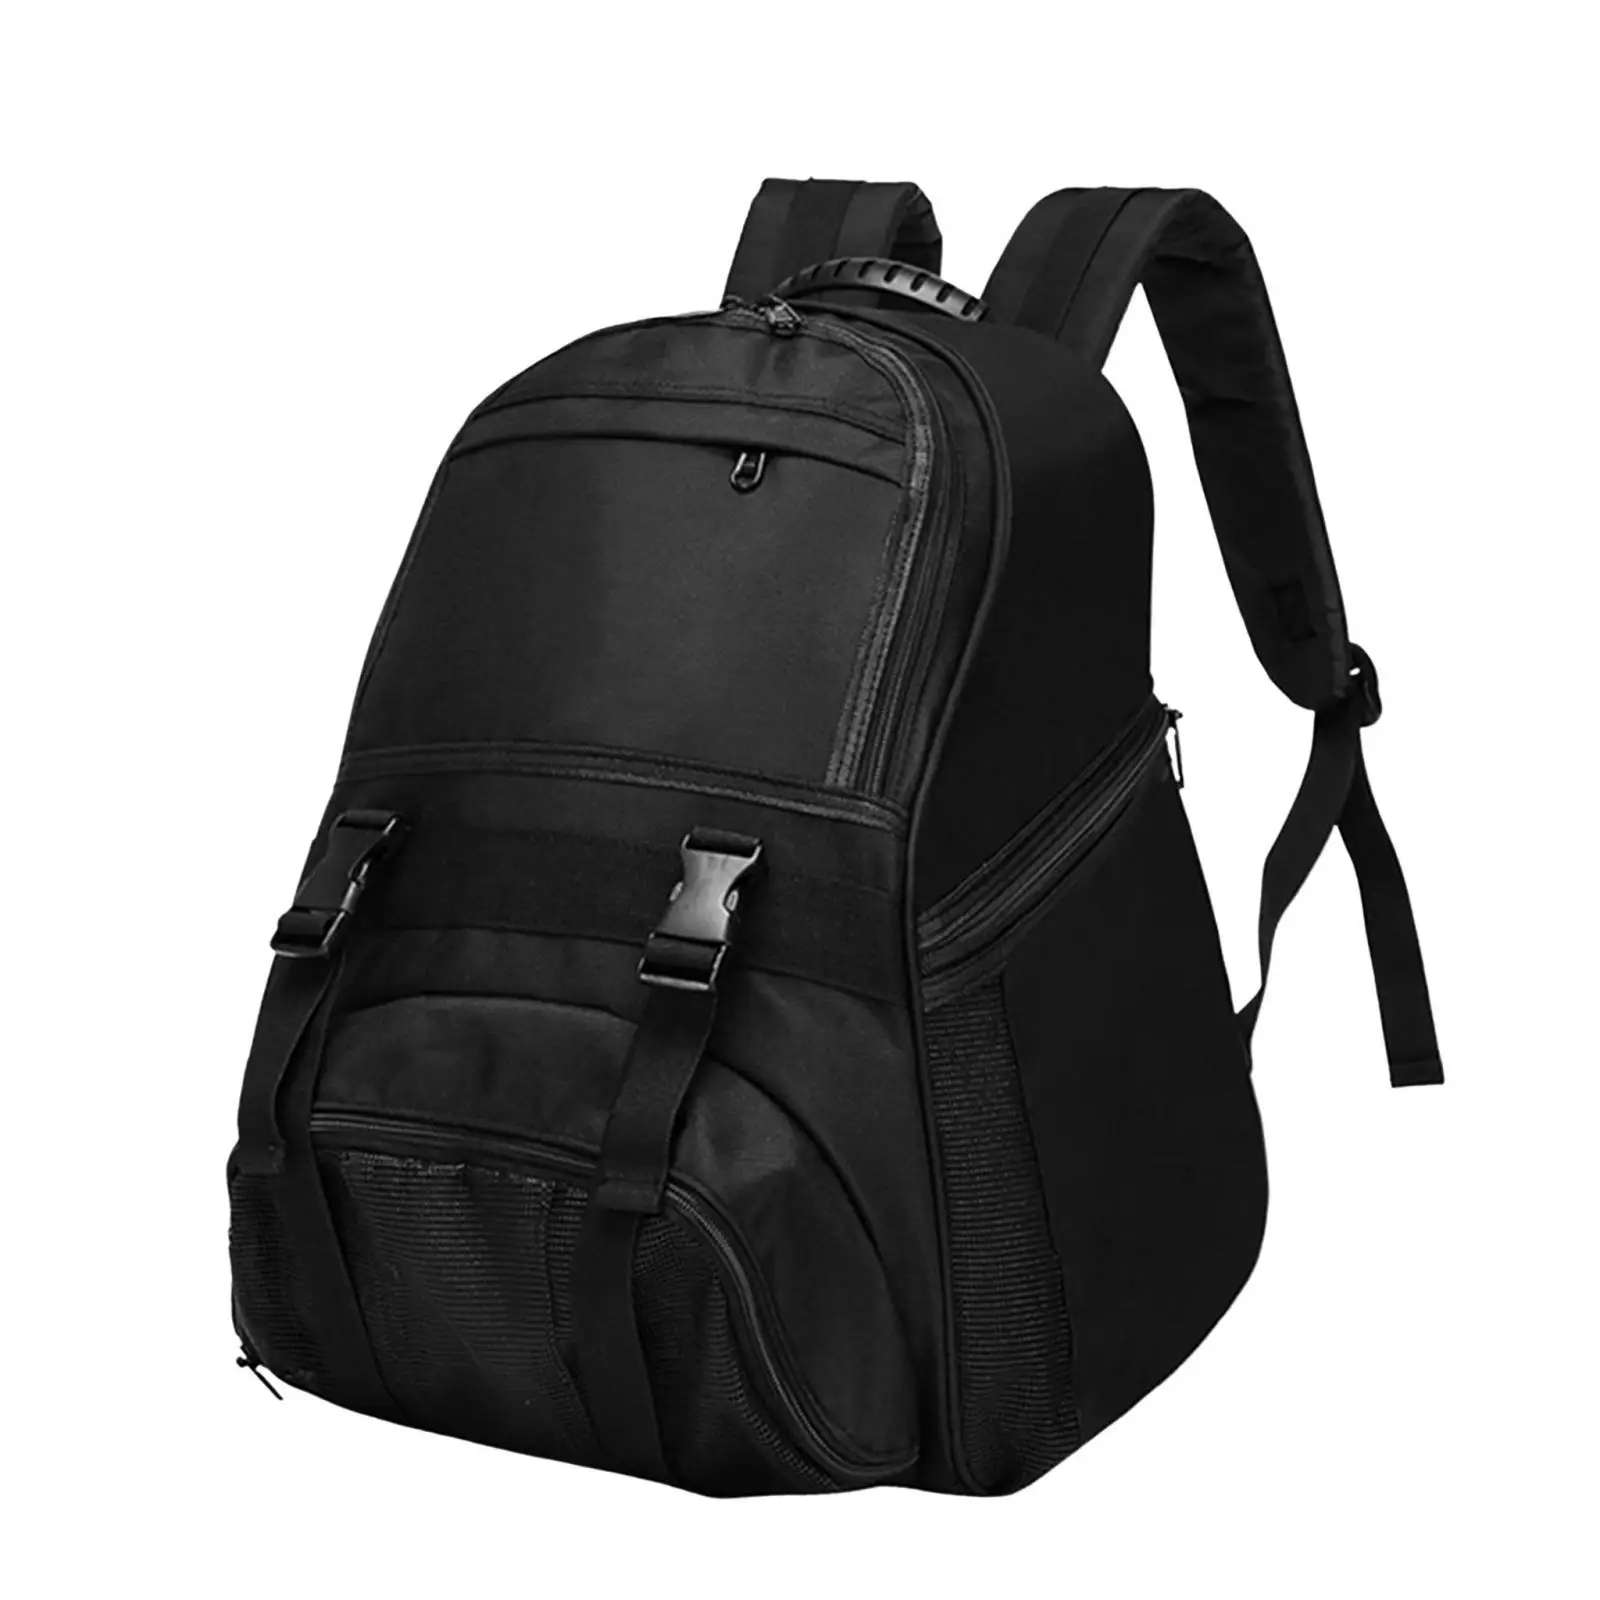 Basketball Carrying Backpack Adjustable Shoulder Straps Backpack Football Bag Storage Bag for Soccer Basketball Rugby Ball